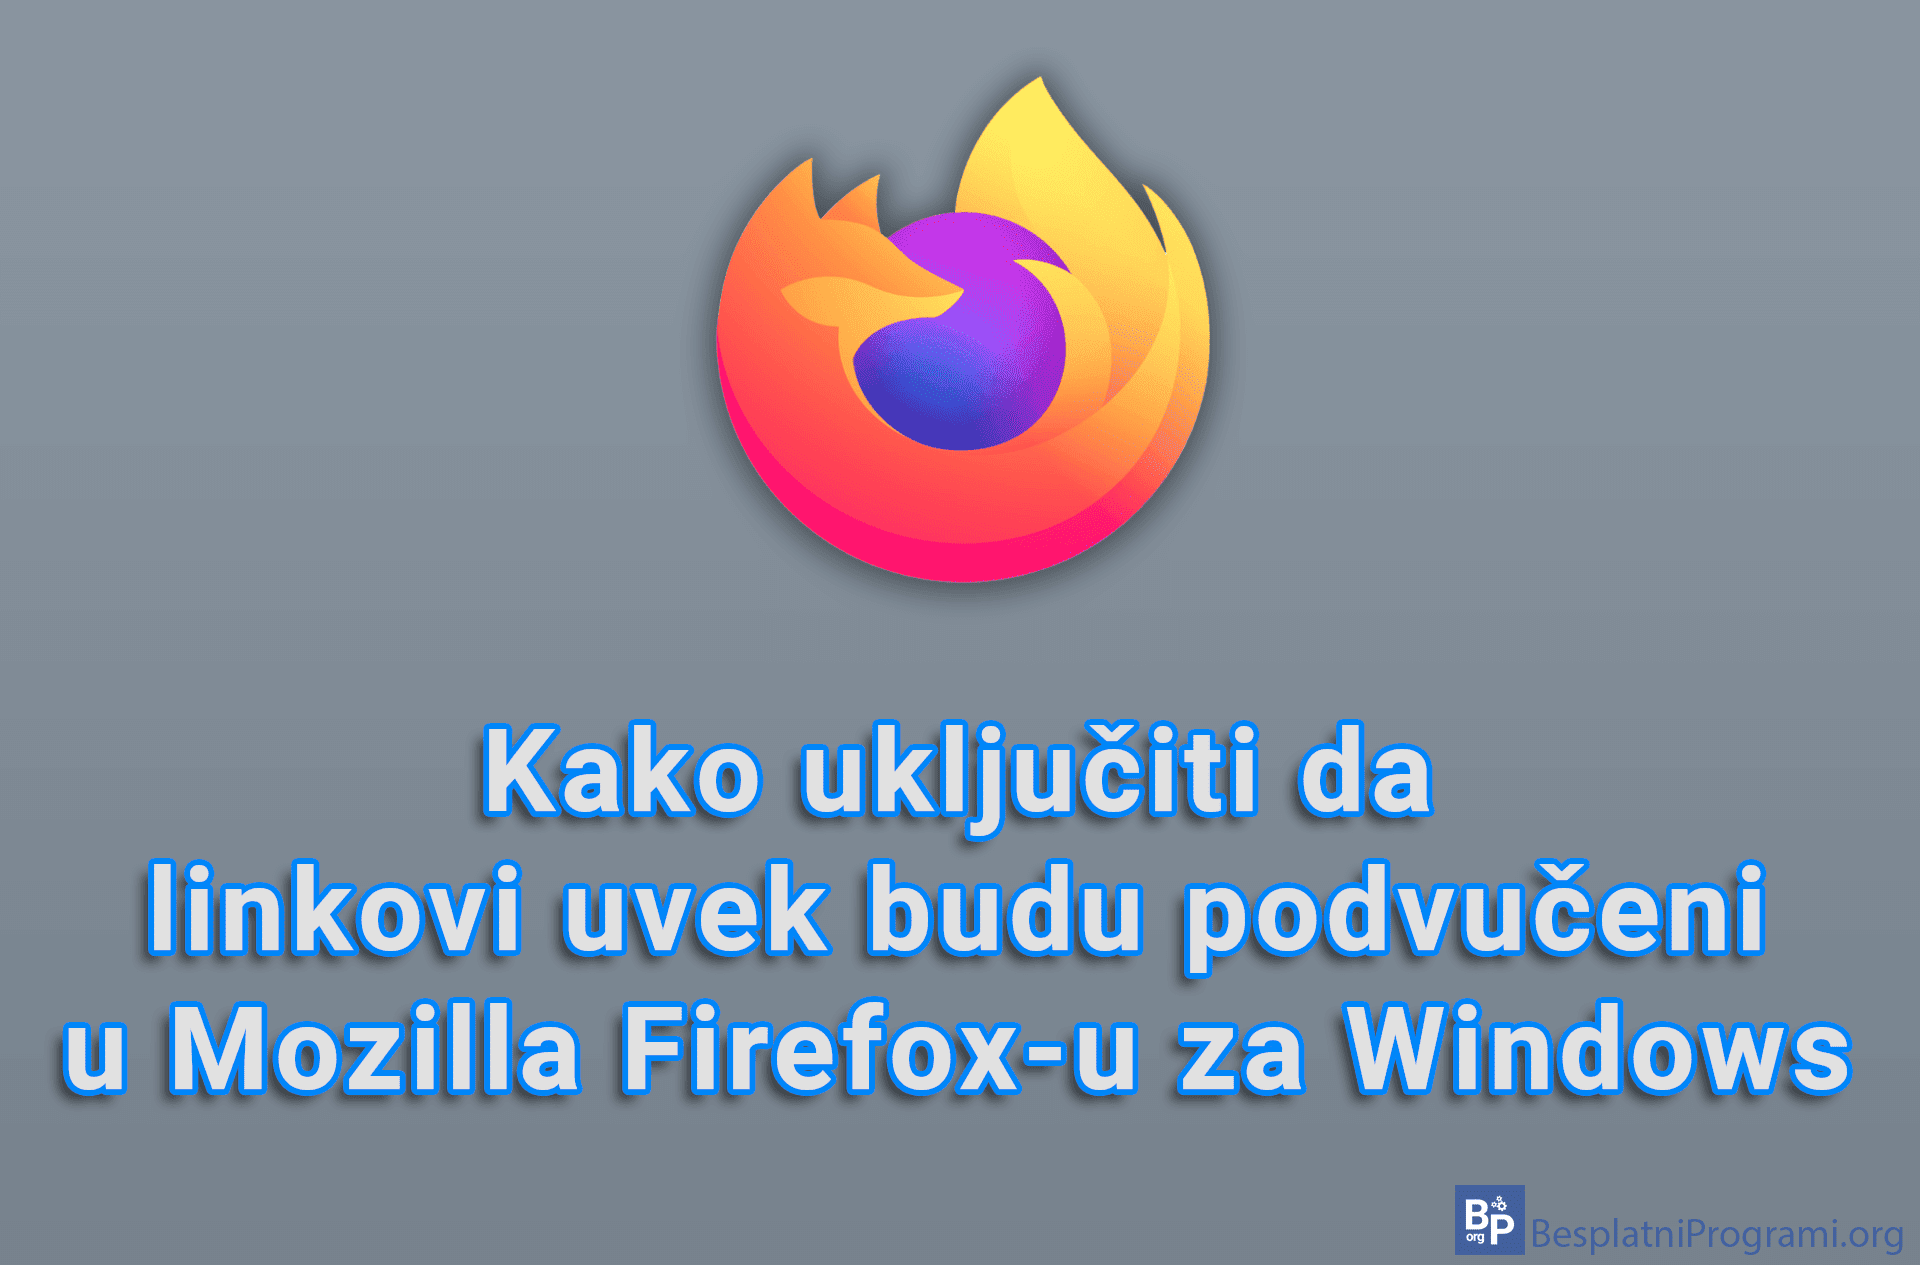 Kako uključiti da linkovi uvek budu podvučeni u Mozilla Firefox-u za Windows